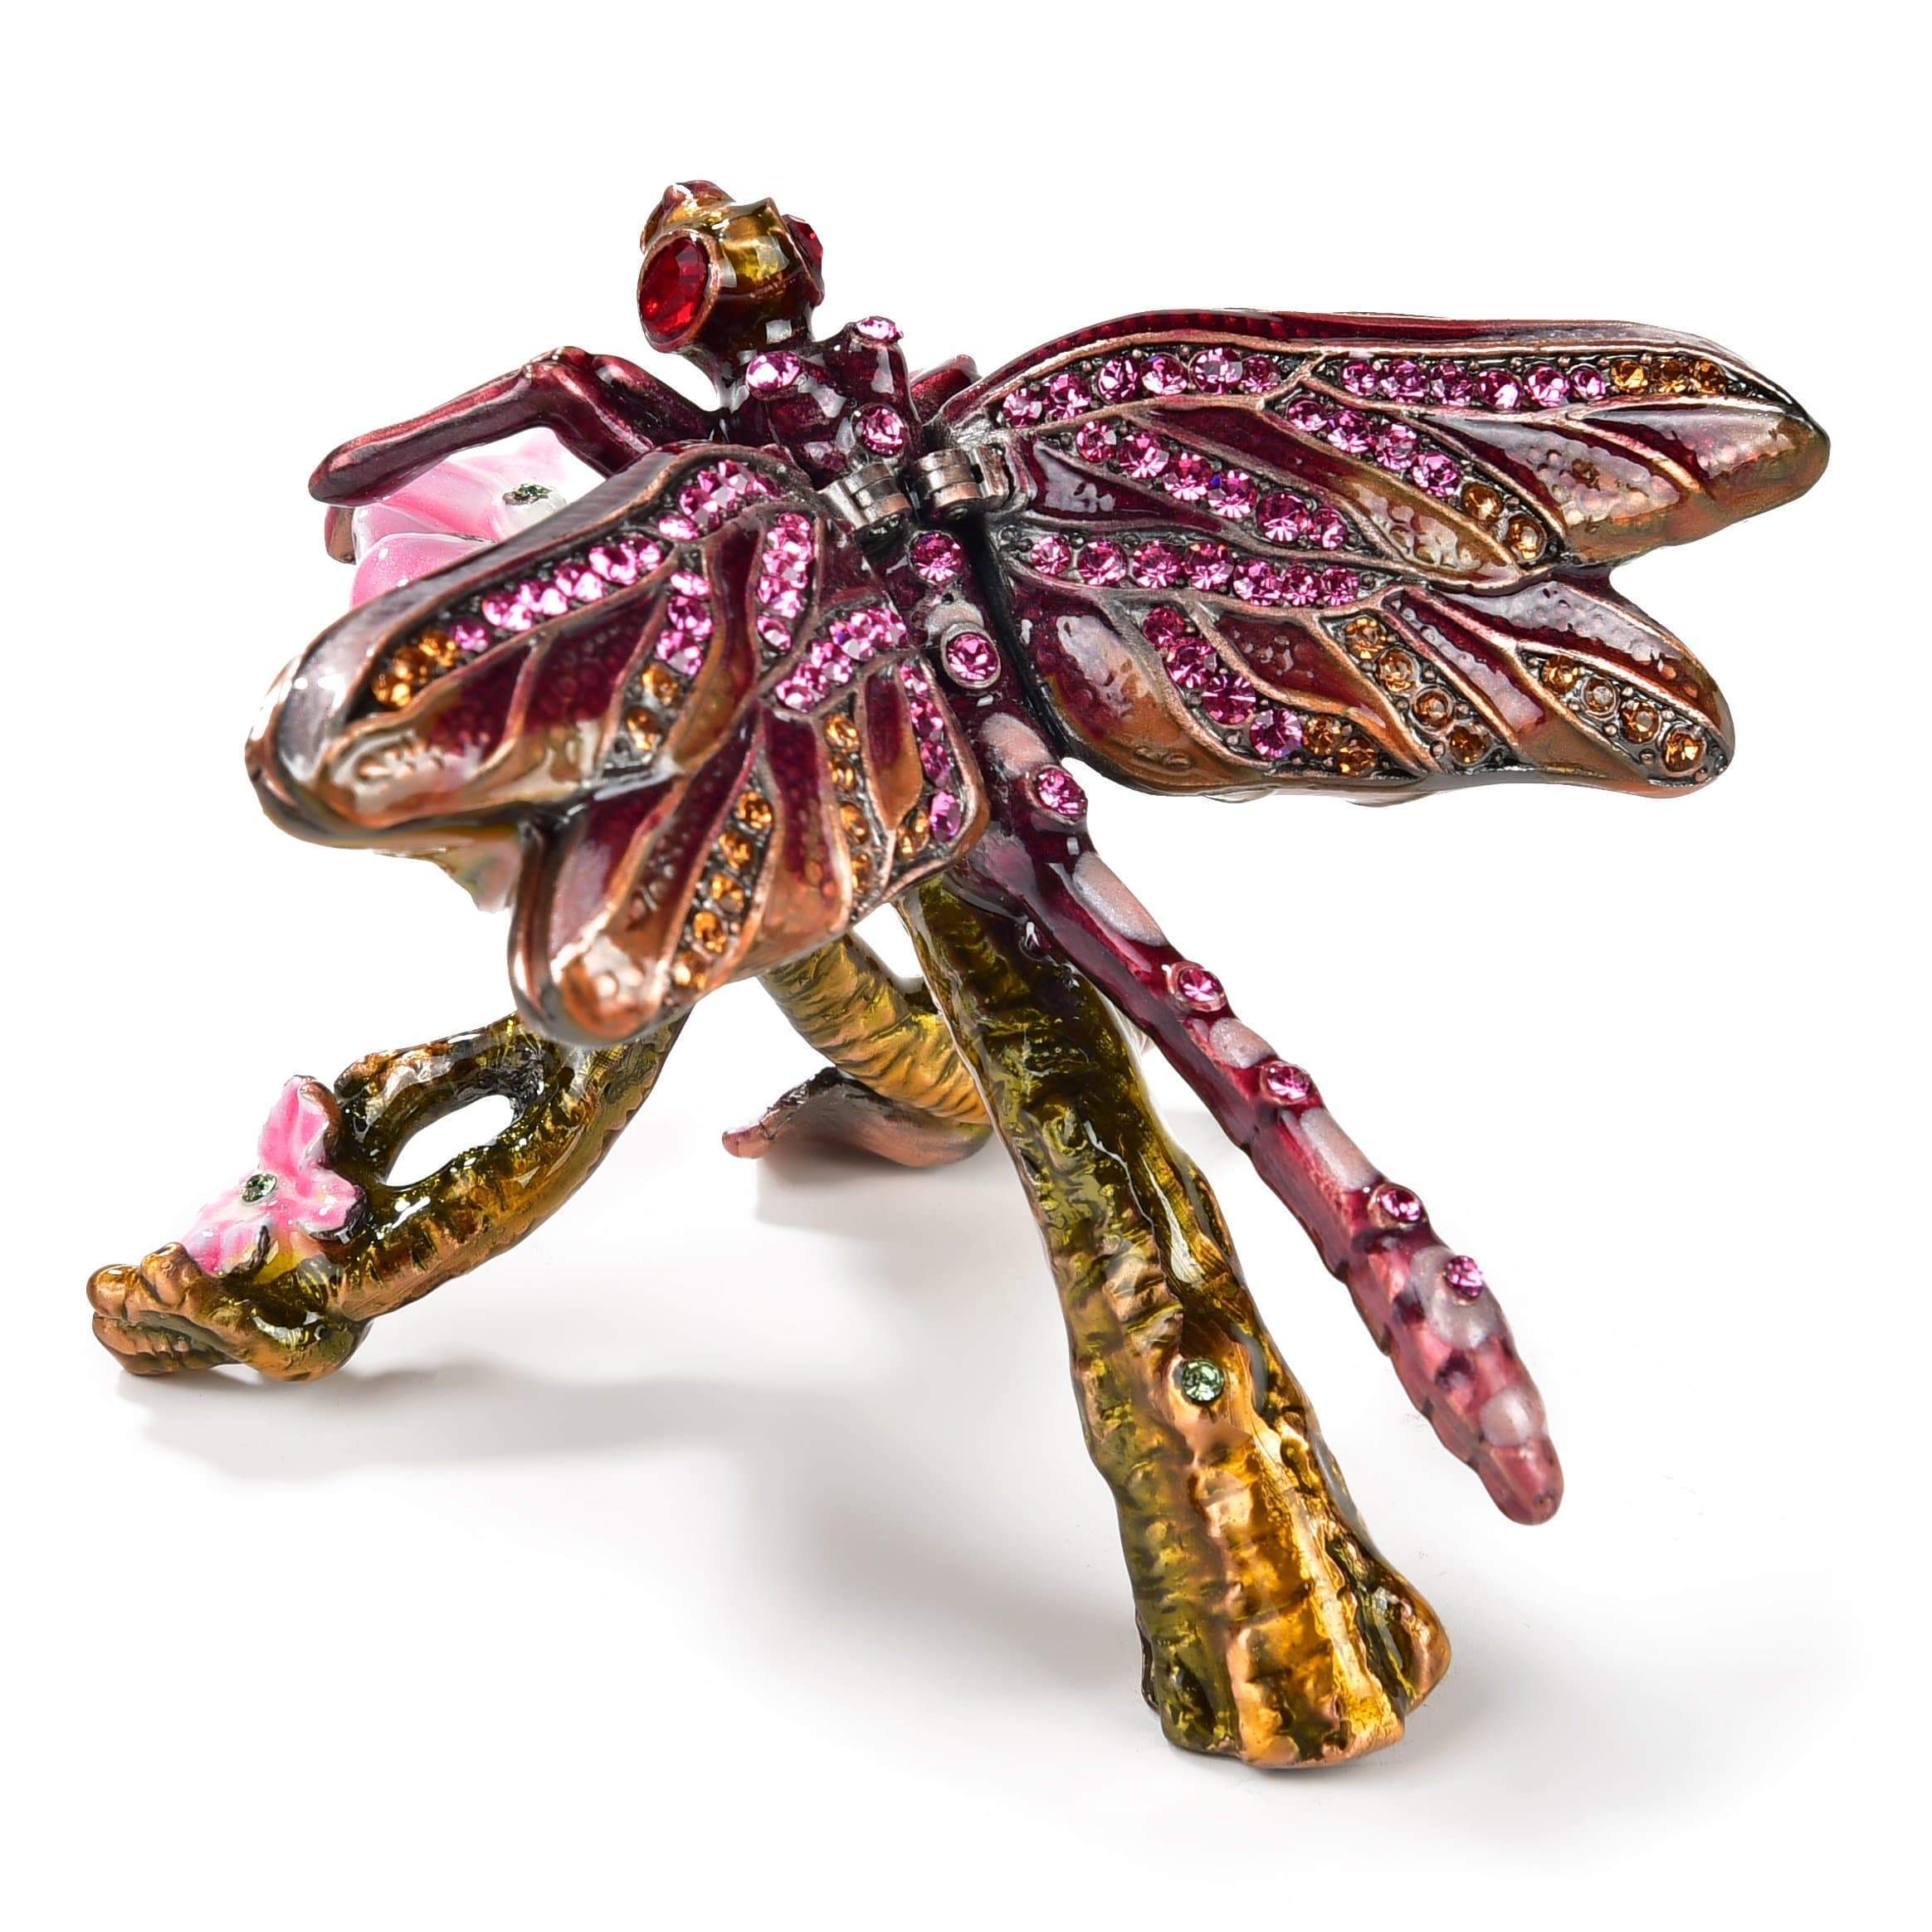 Kalifano Vanity Figurine Pink & Purple Dragonfly Crystal Figurine Keepsake Box SVA-024